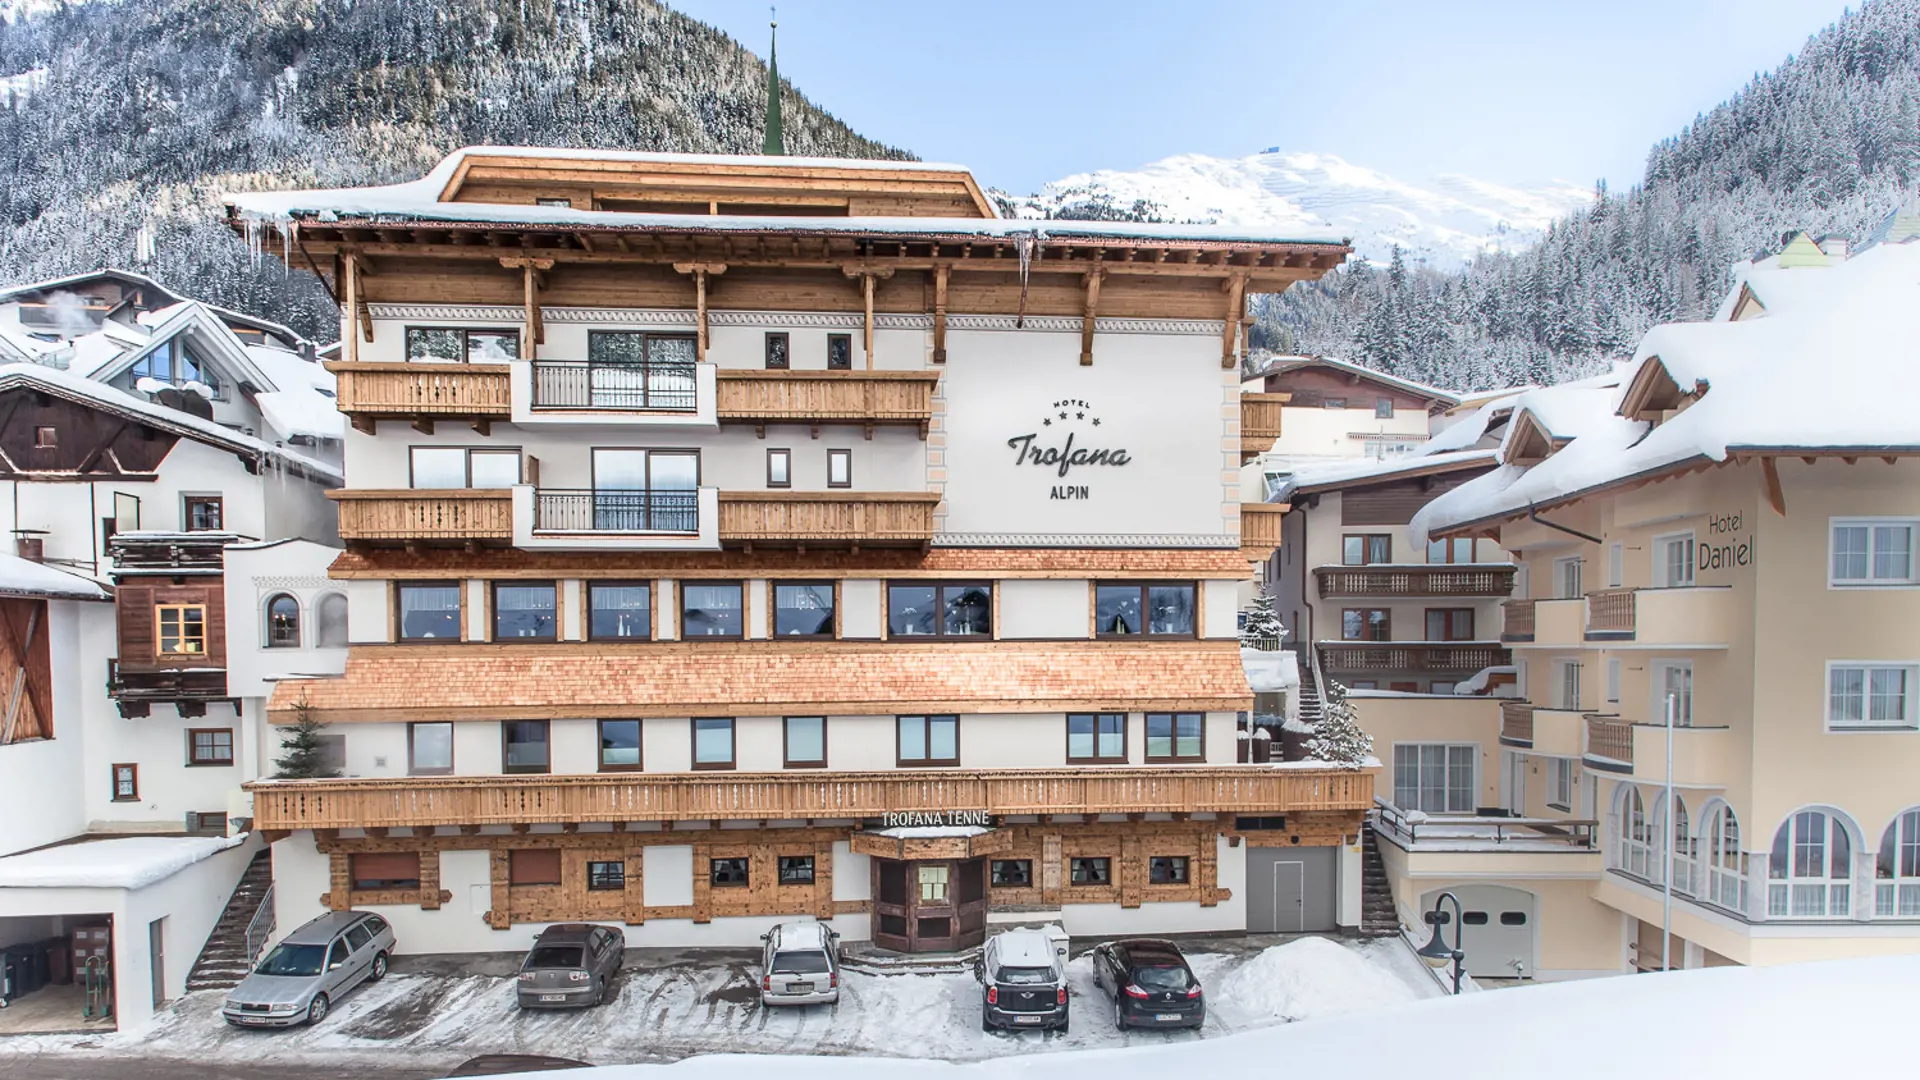 Hotel Trofana Alpin